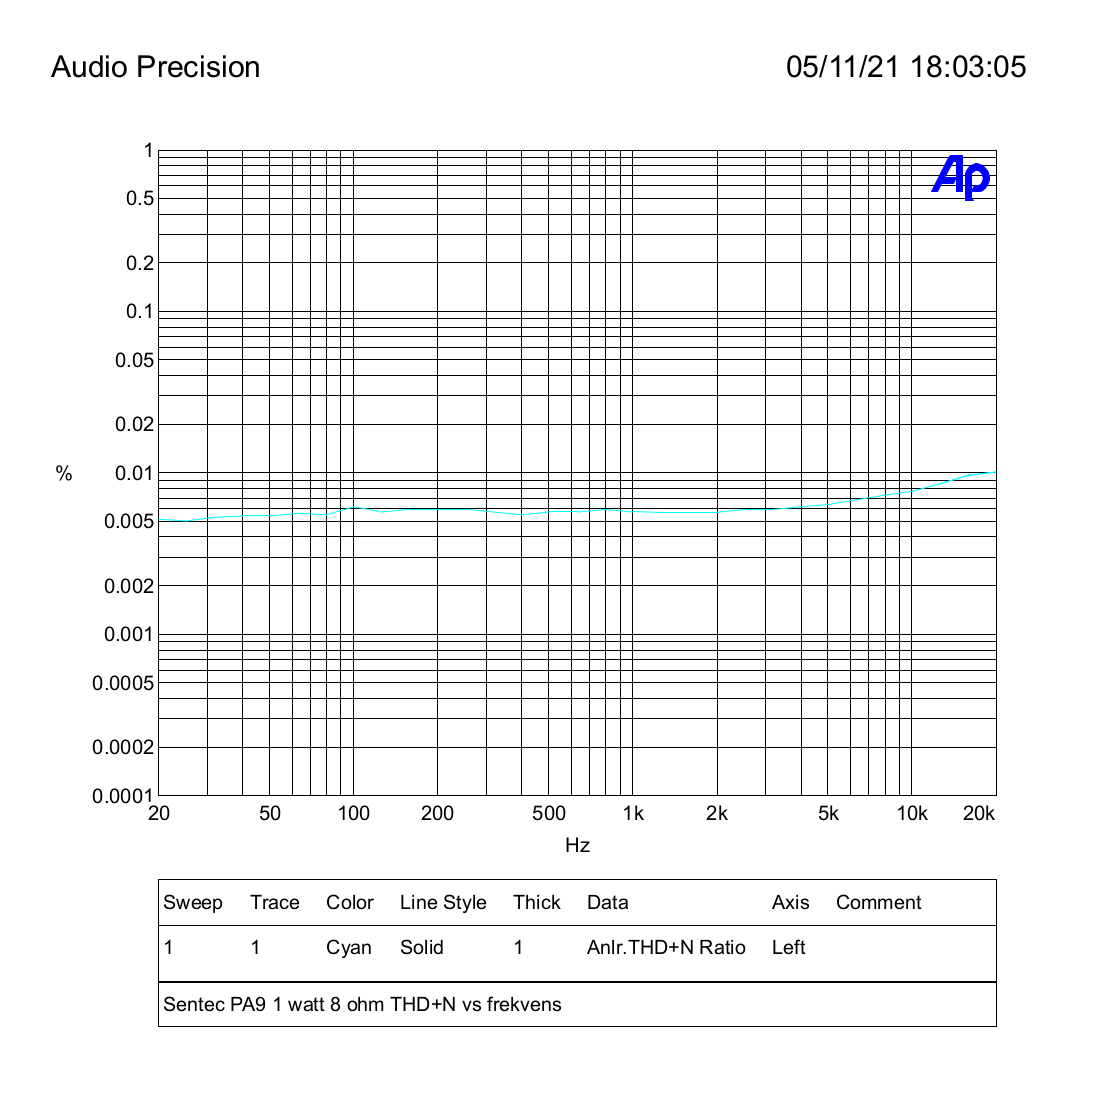 Sentec PA9 1 watt 8 ohm THD+N vs frekvens.png